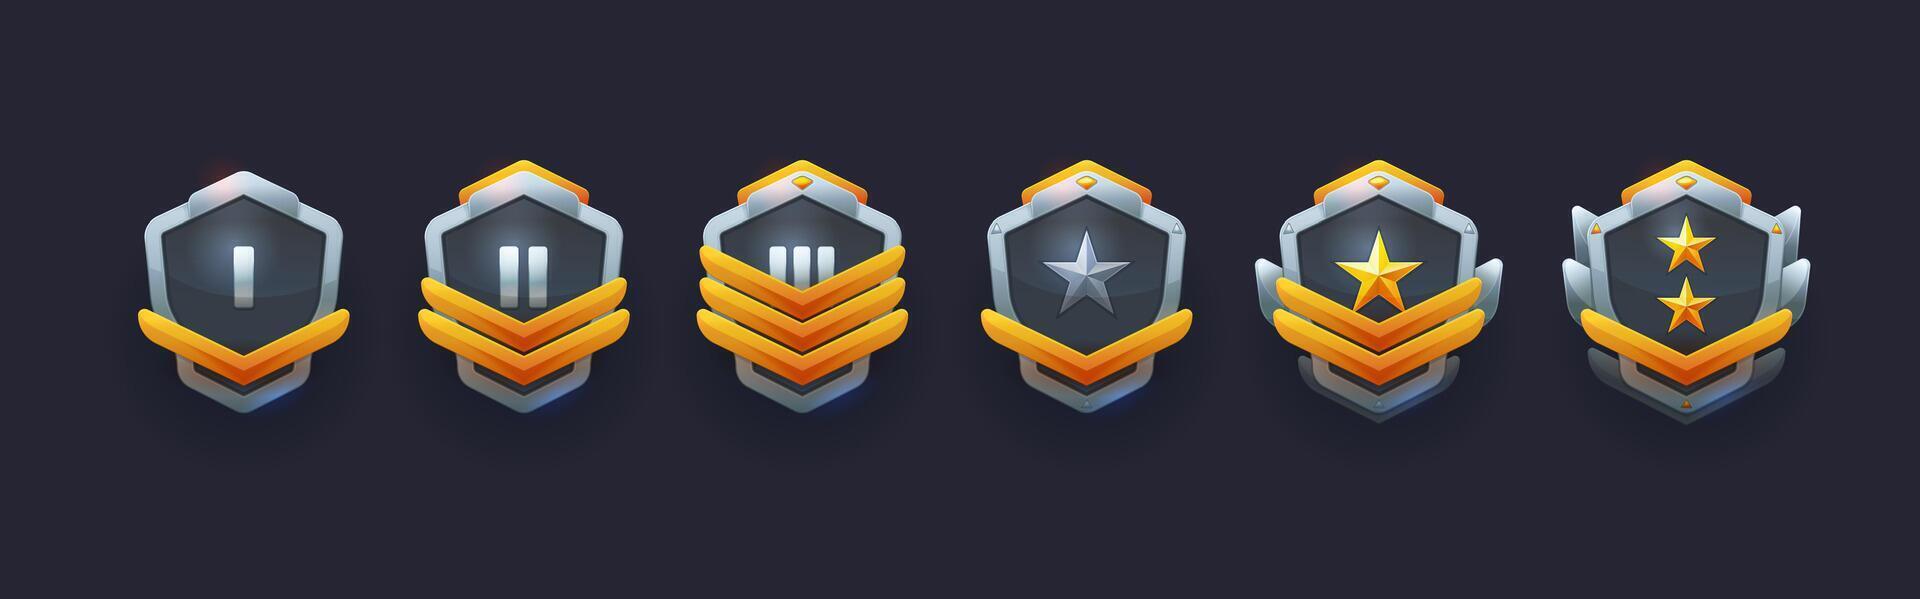 militar juego logro insignias o rango premios vector